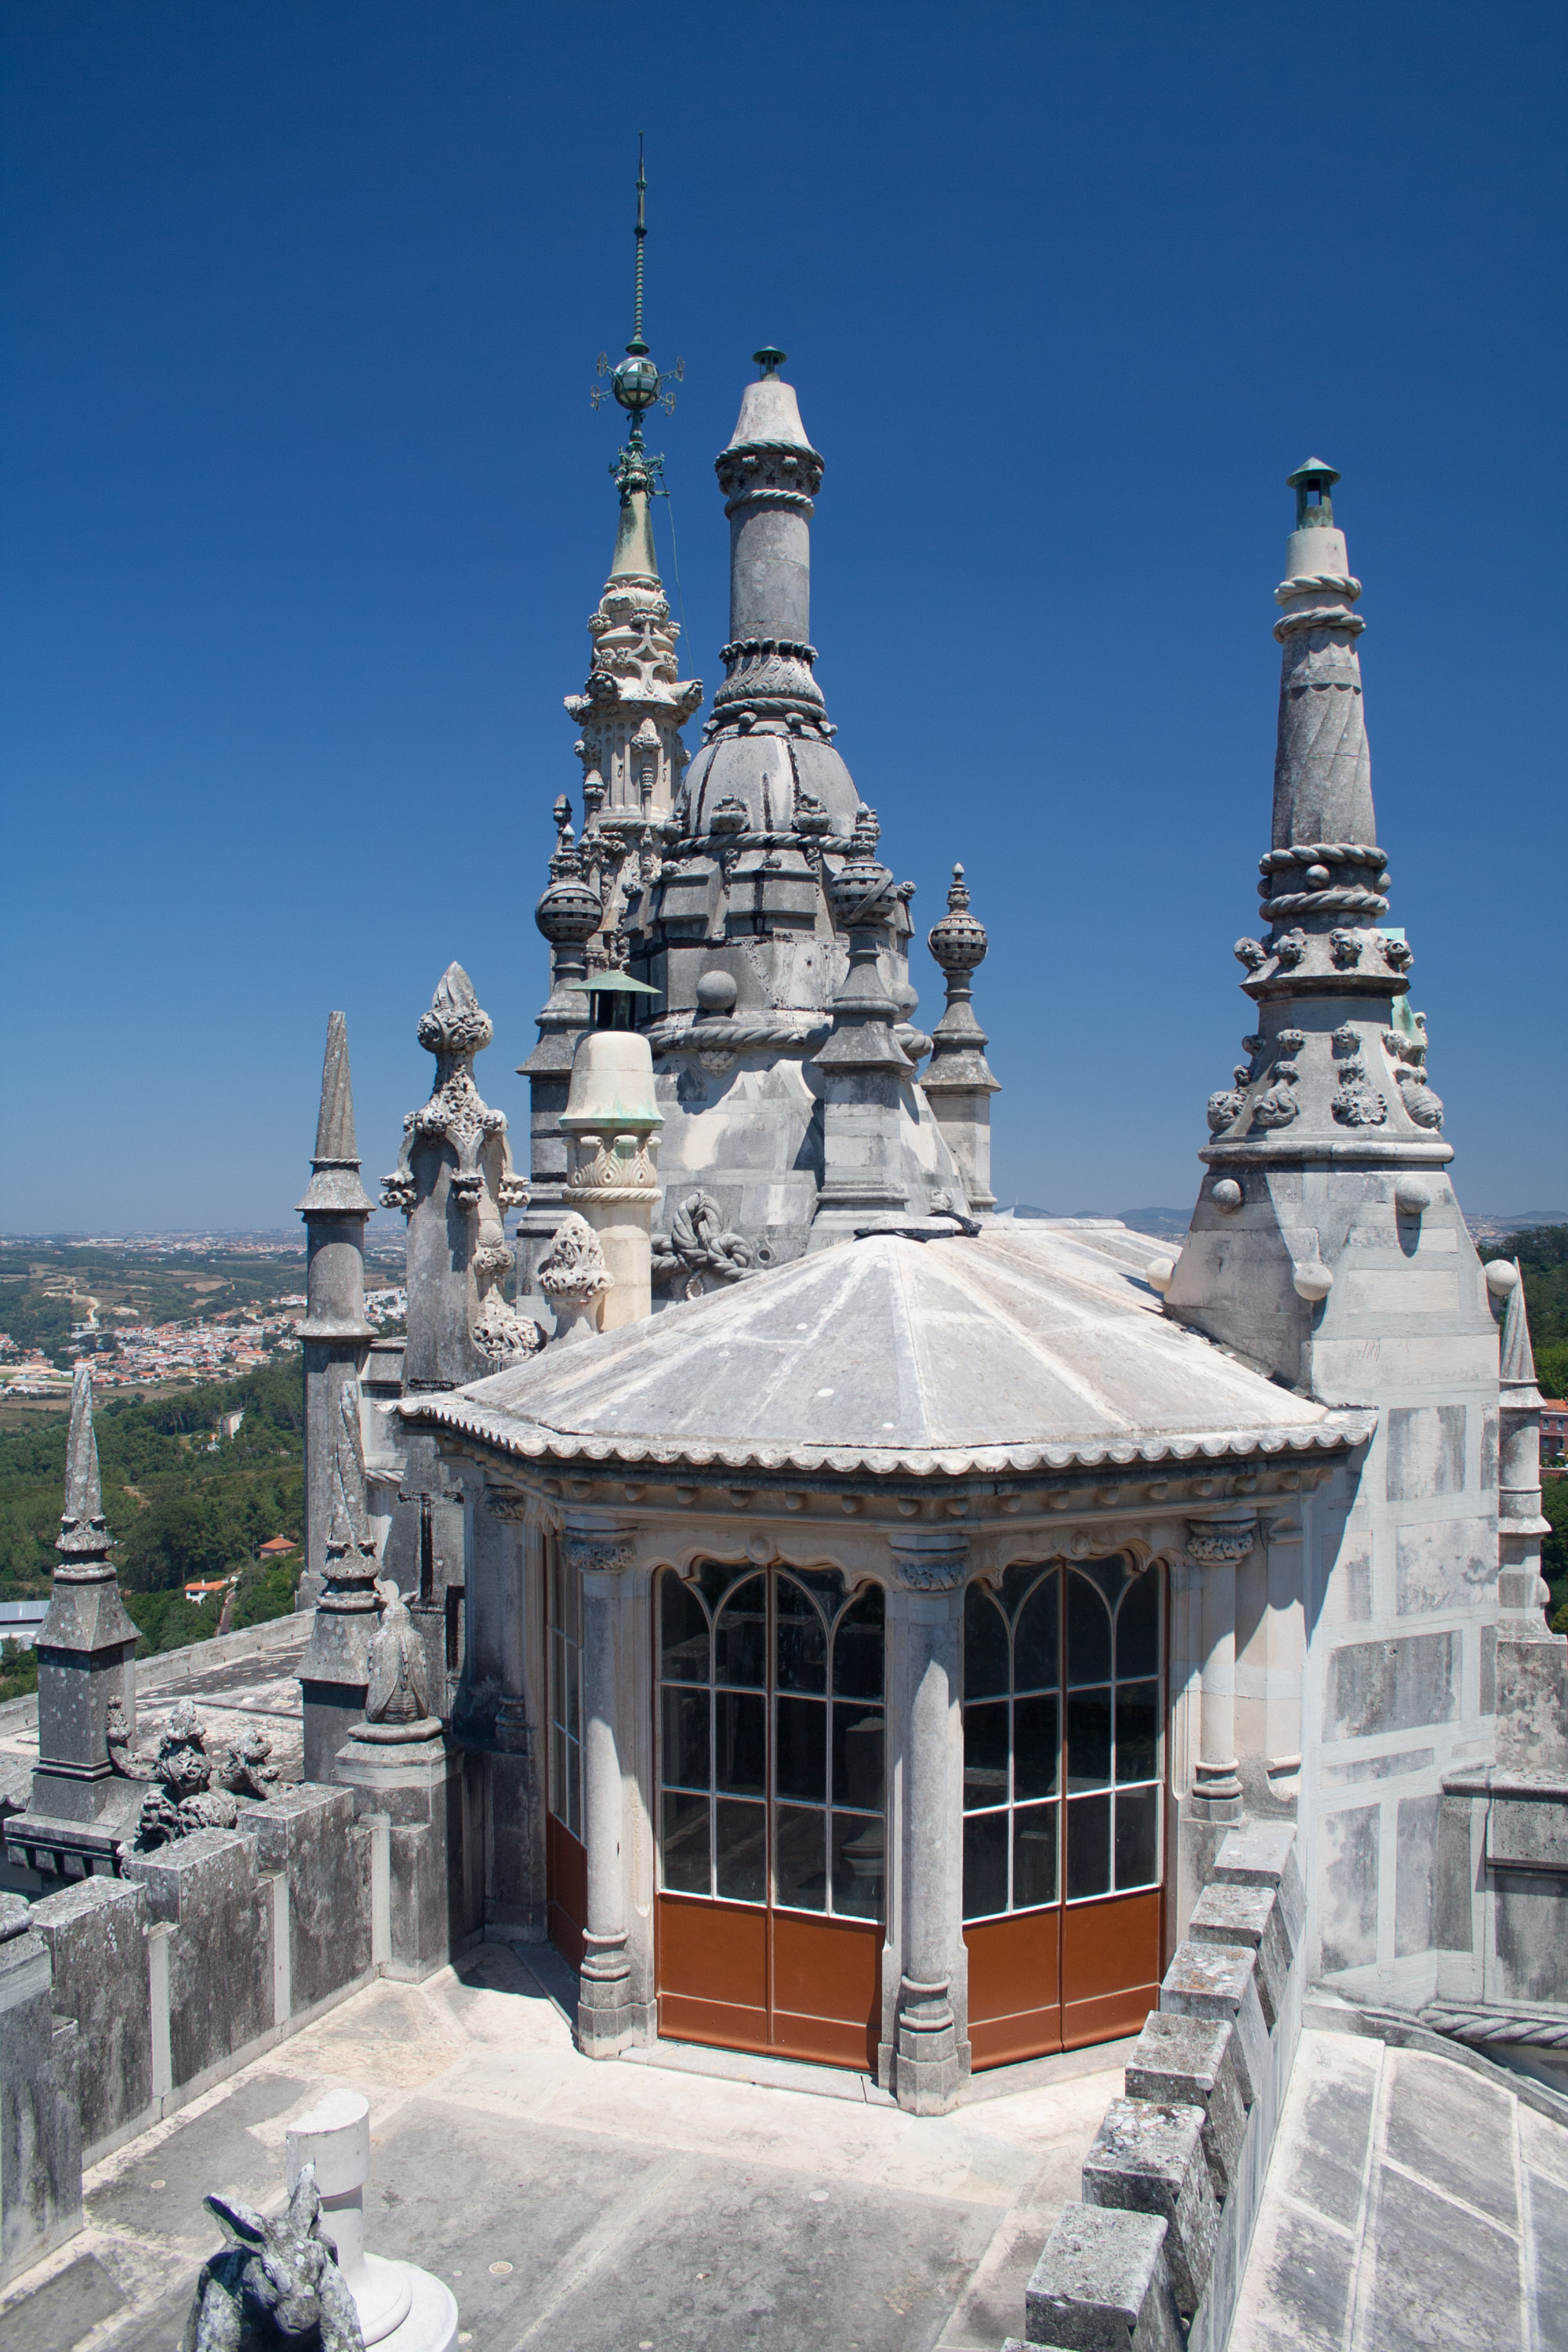 Vista desde la terraza de la torre octogonal del palacete